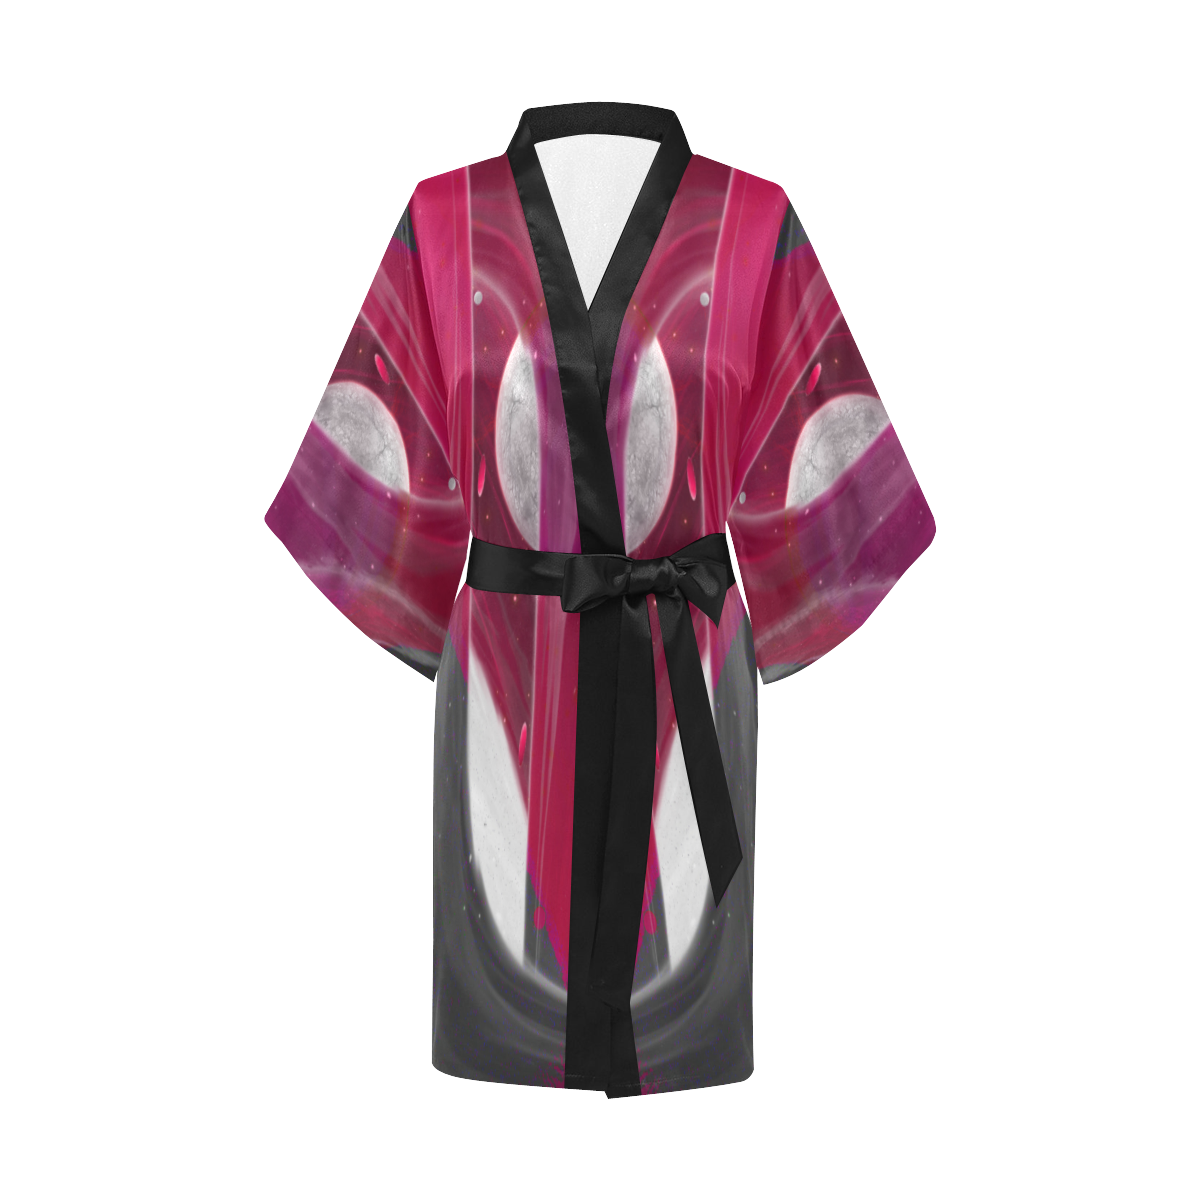 2560x1600 1 Kimono Robe